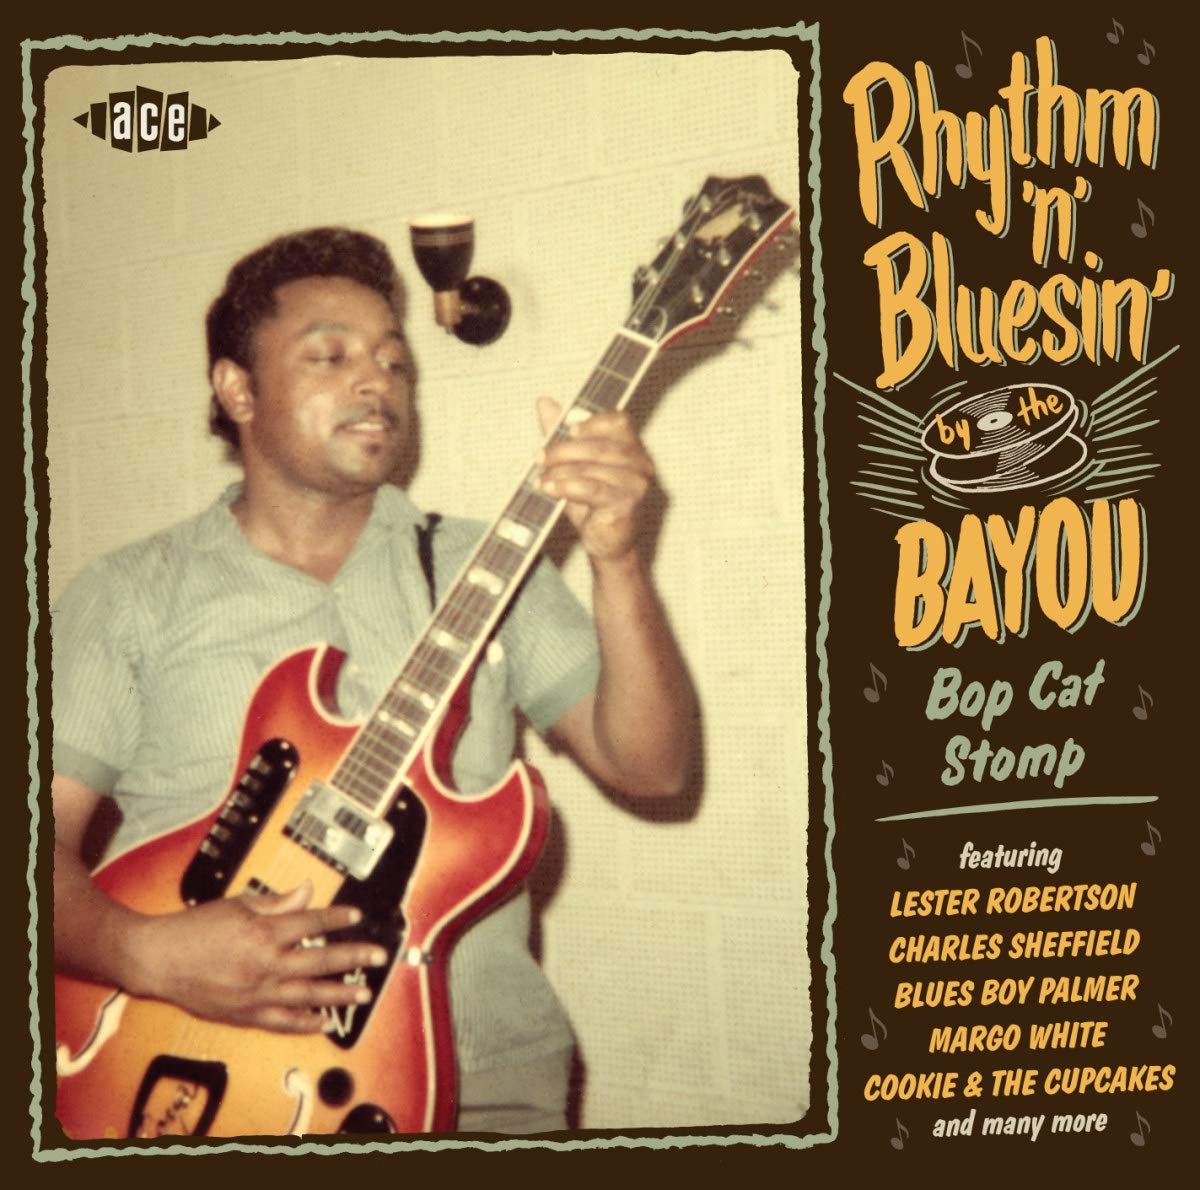 Rhythm 'N' Bluesin' By the Bayou-Bop Cat Stomp